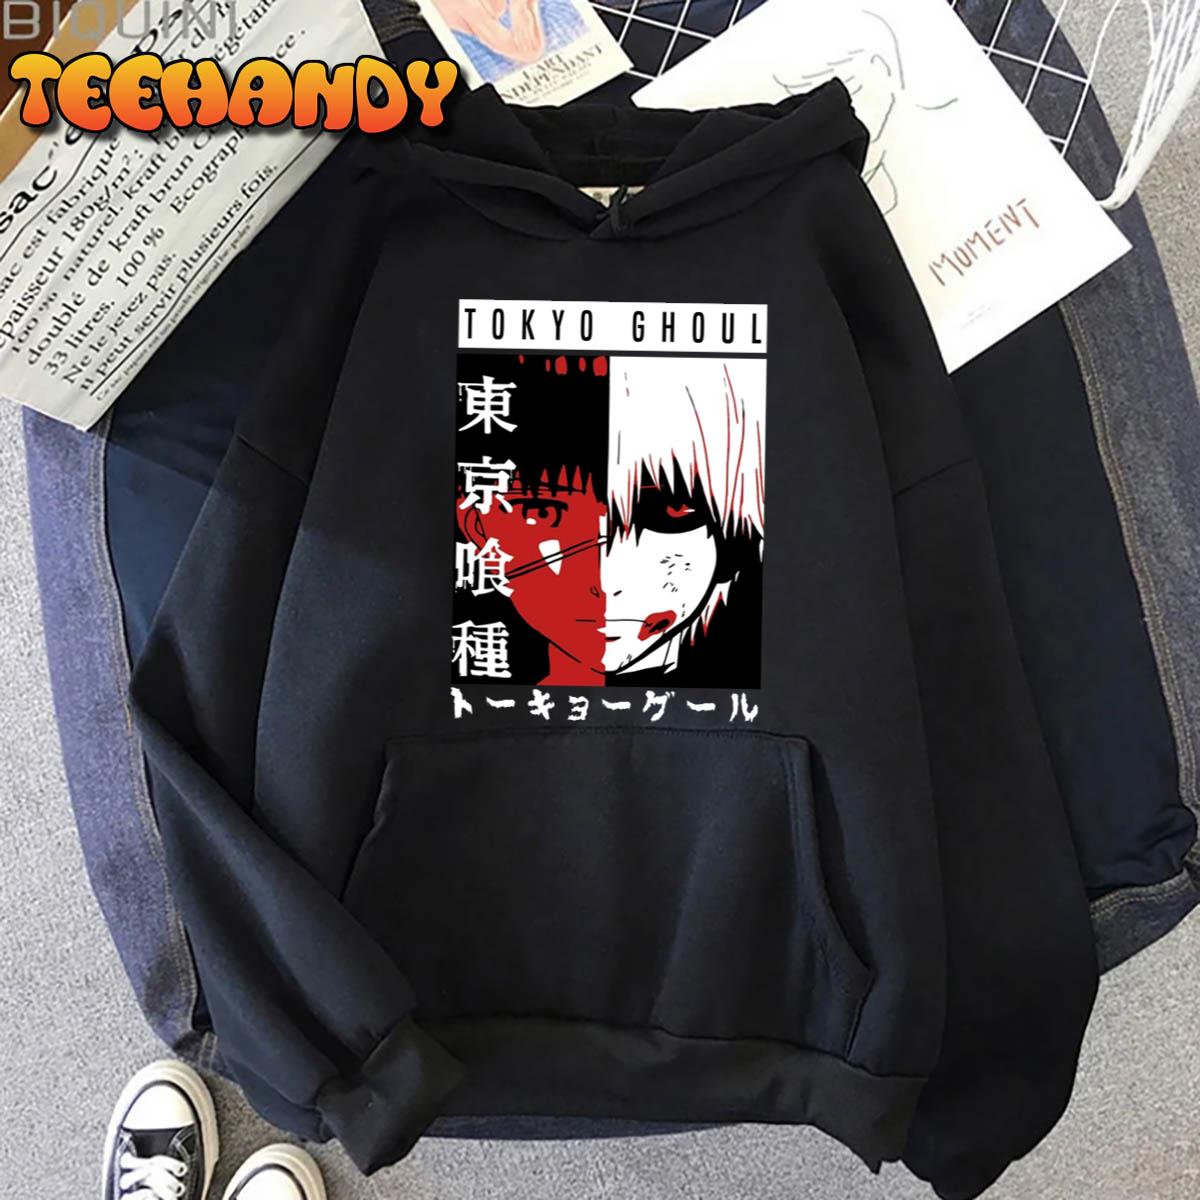 Black Tokyo Ghoul Kaneki Tokyo Ghoul Anime Unisex T-Shirt